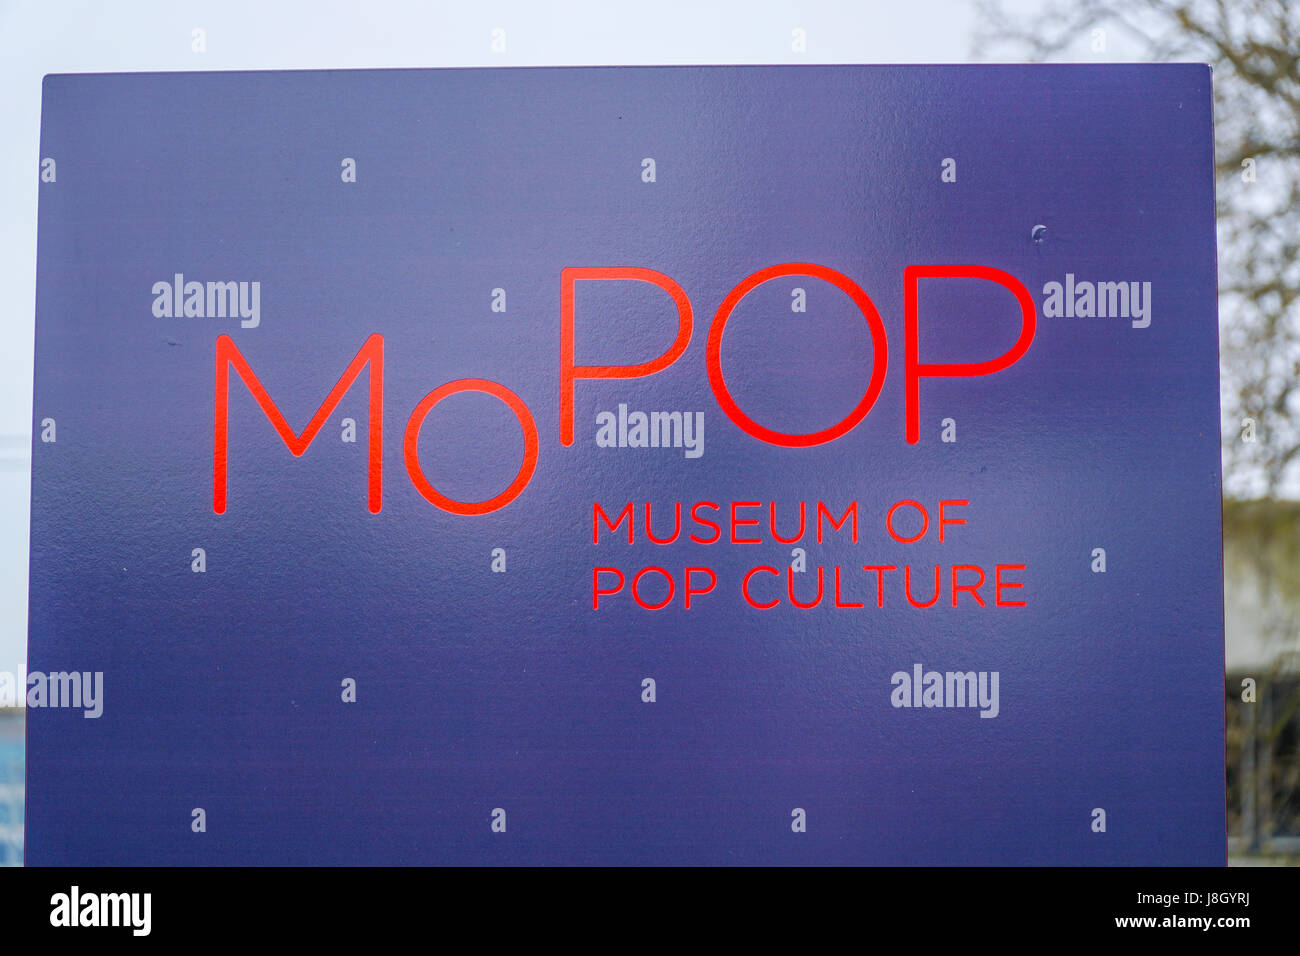 Mopop Modern Pop Museum In Seattle Museum Of Pop Culture Seattle Washington J8GYRJ 